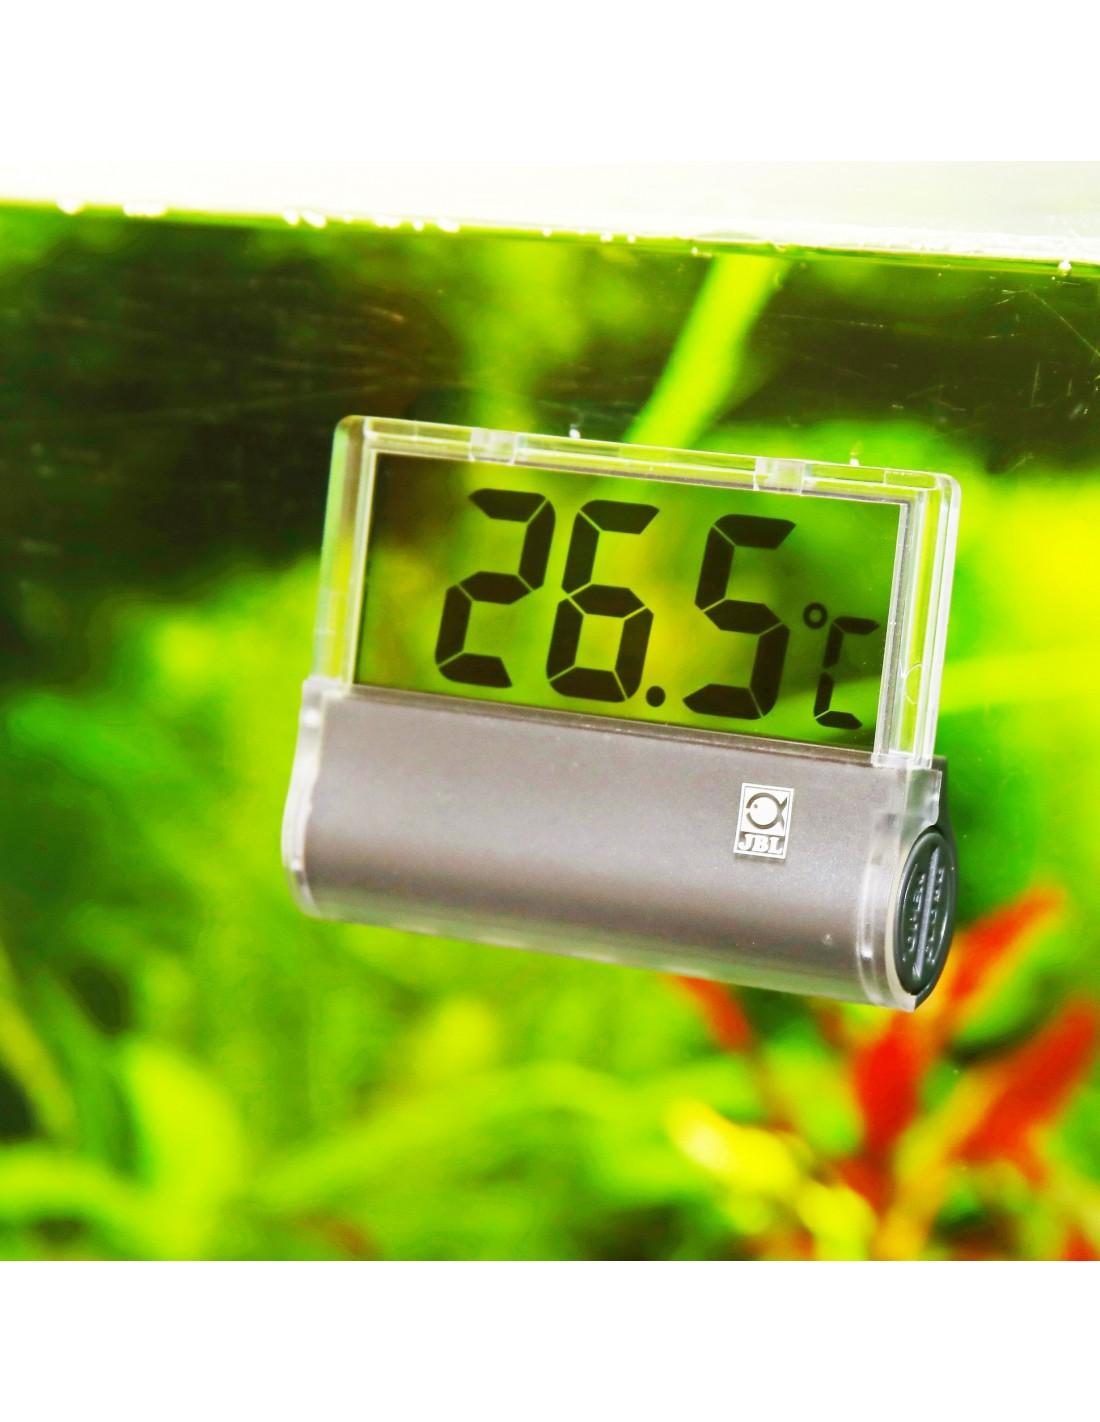 Thermomètre digital à pile pour aquarium d'eau douce ou d'eau de